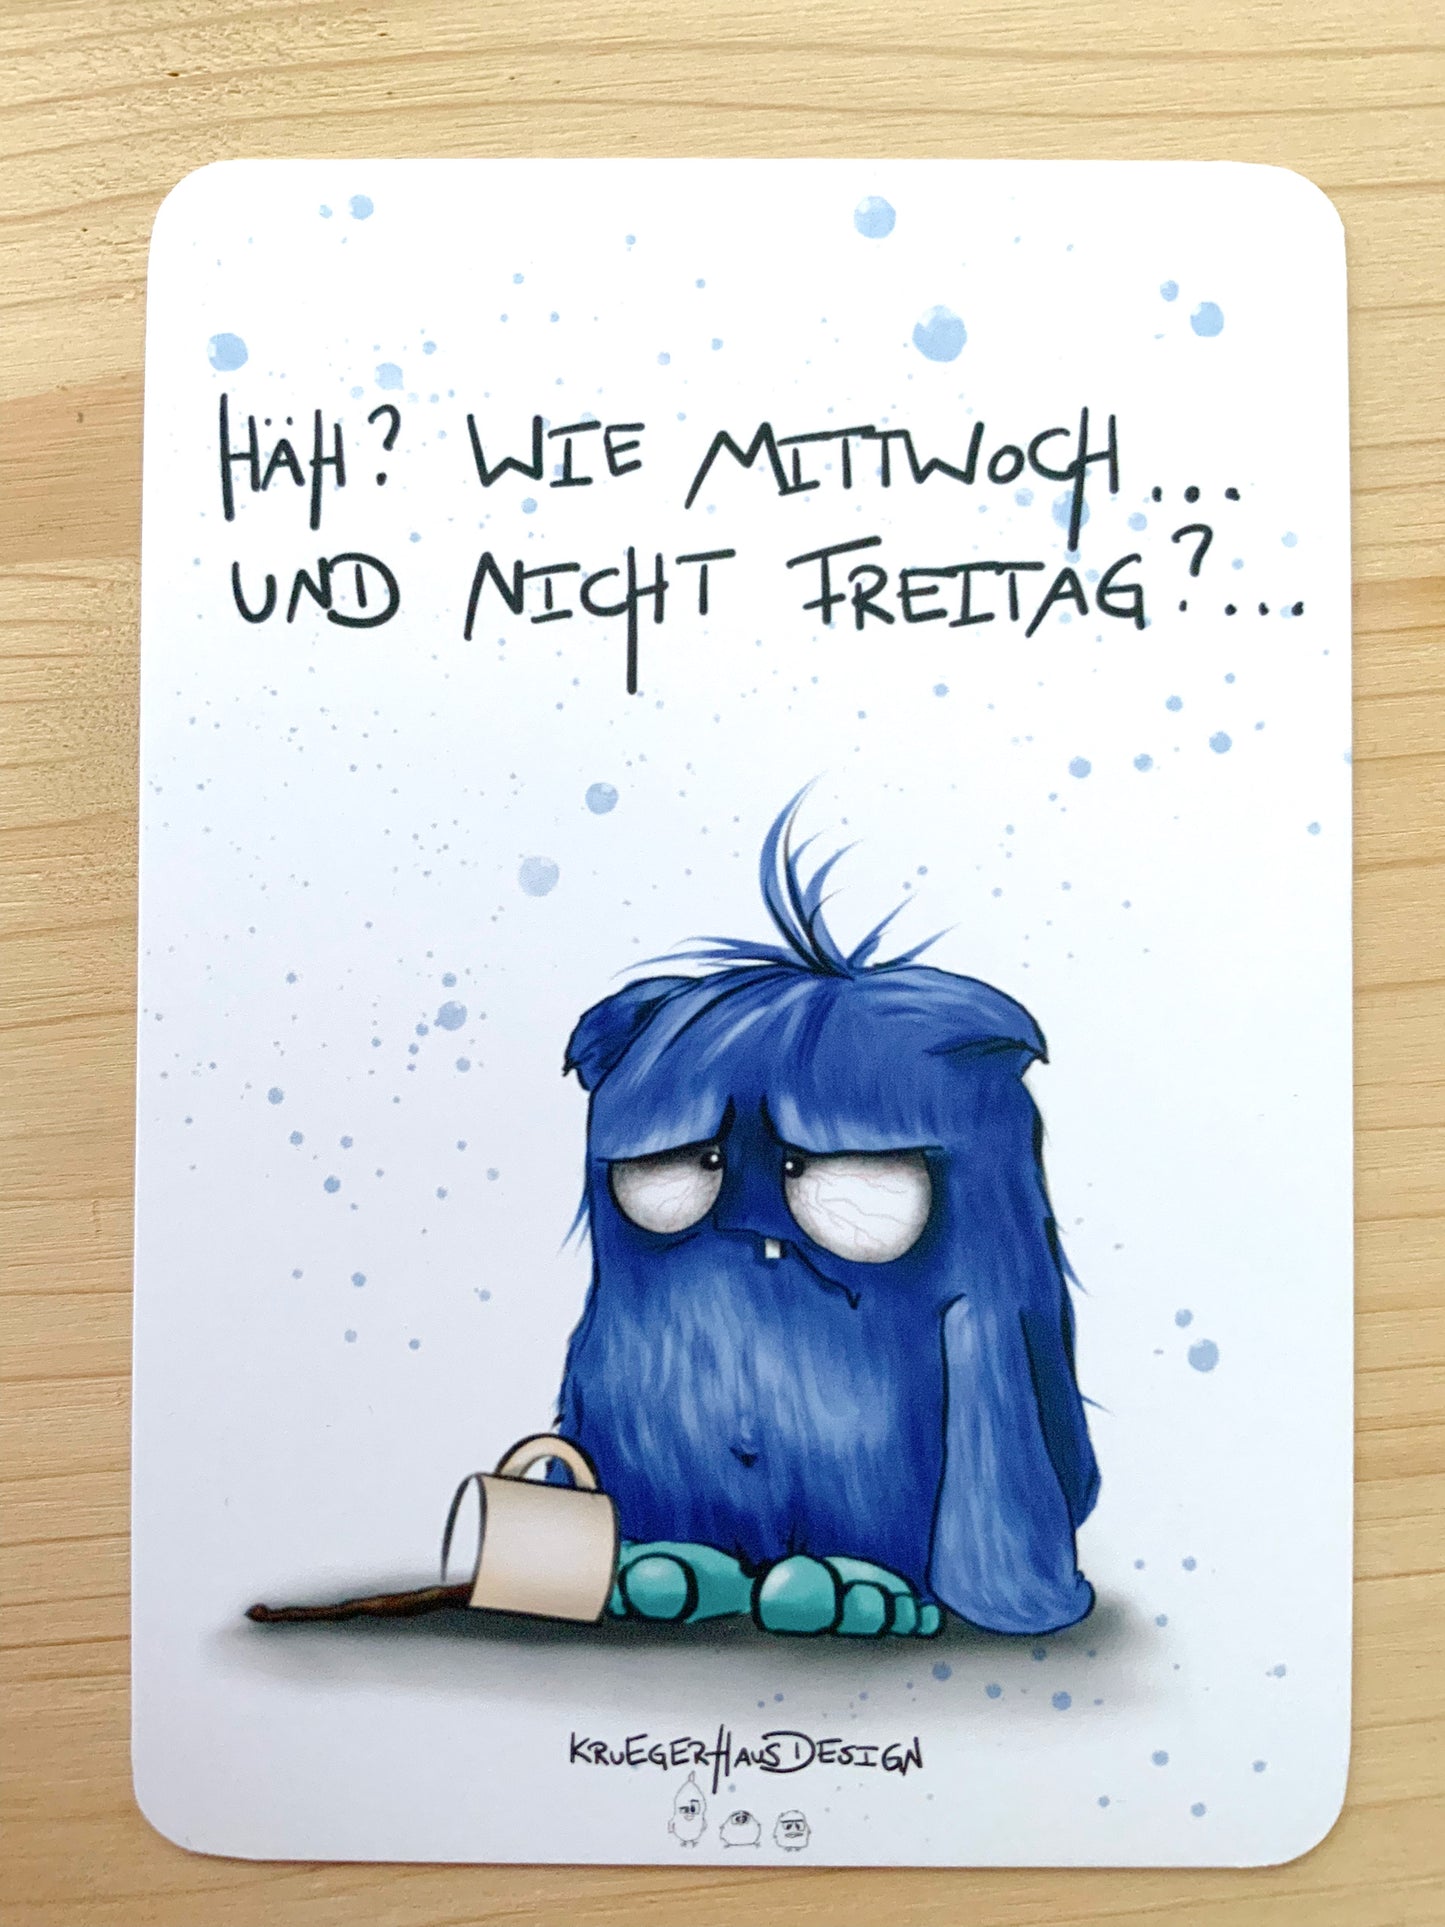 Postkarte Monster Kruegerhausdesign "Häh? Wie Mittwoch... und nicht Freitag?"